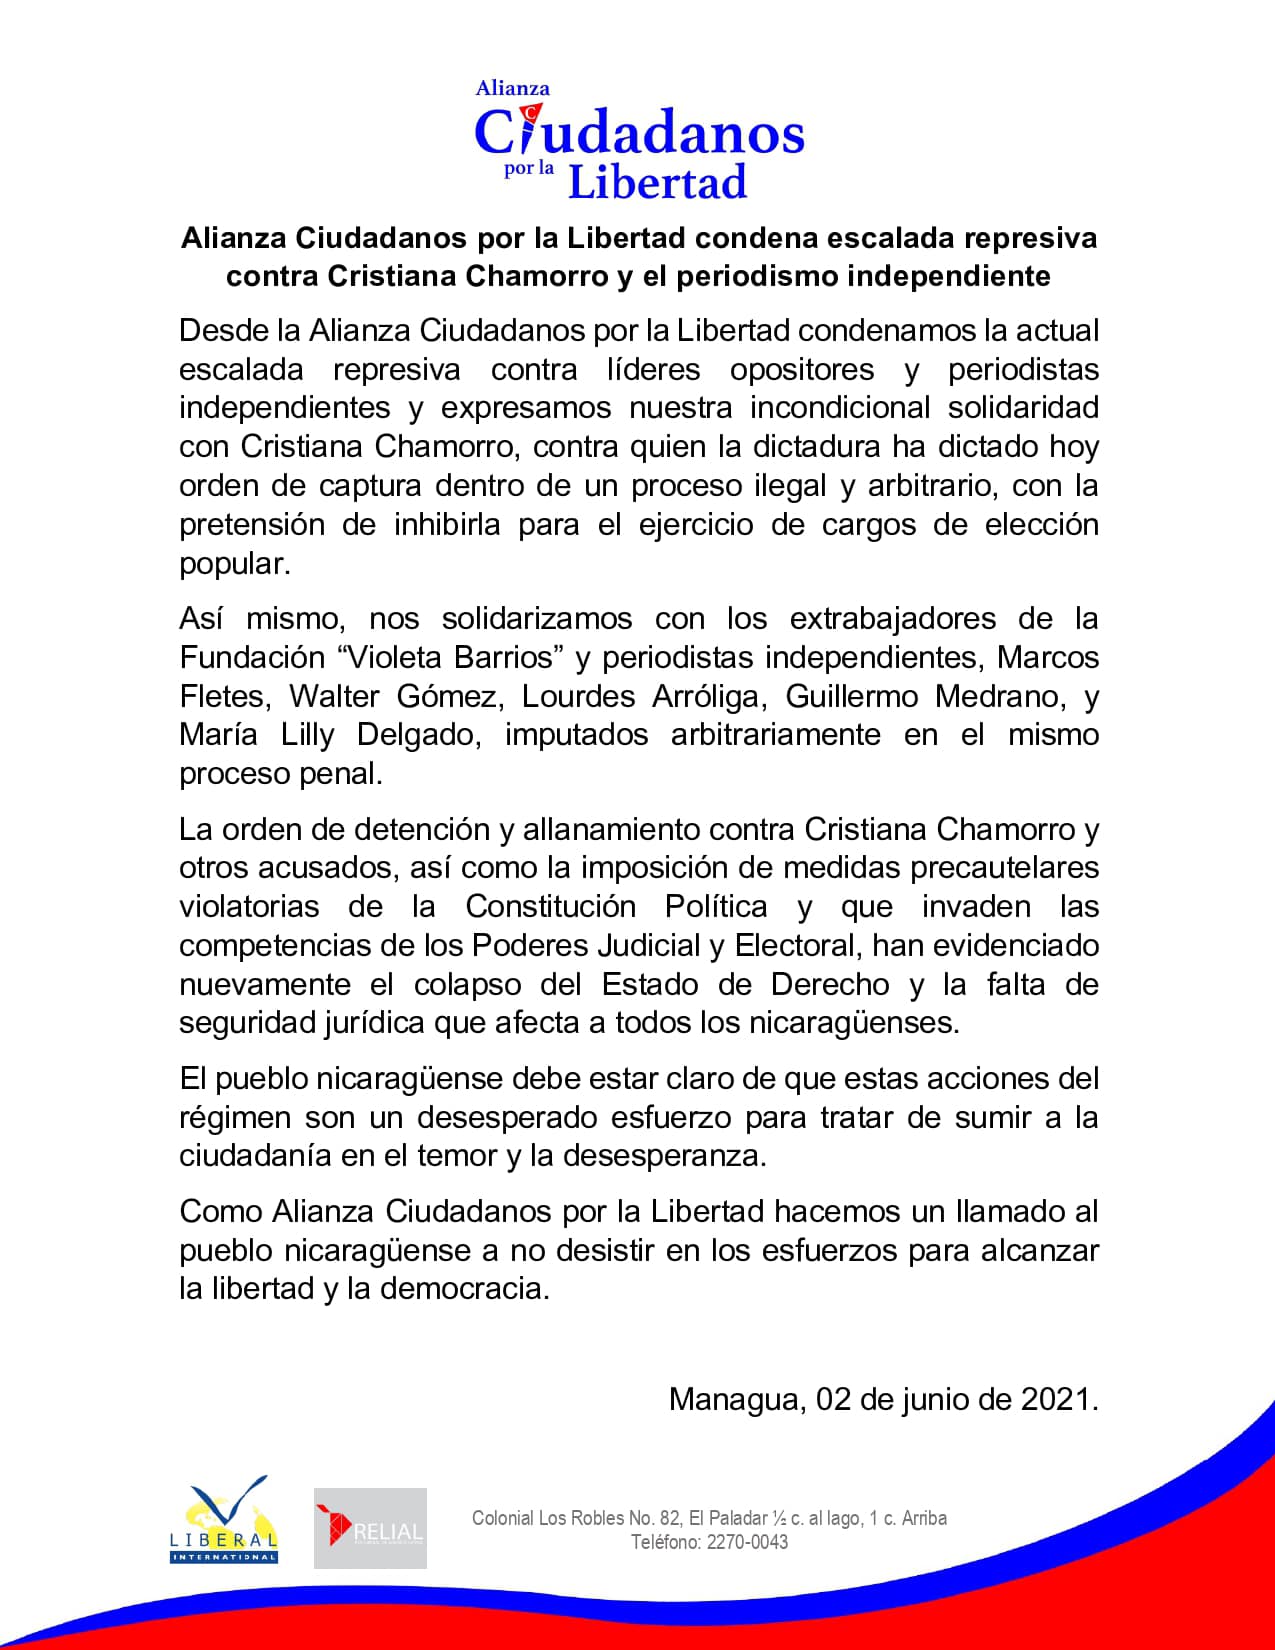 Alianza Ciudadanos por la Libertad, condena escalada represiva contra Cristiana Chamorro y el periodismo independiente.